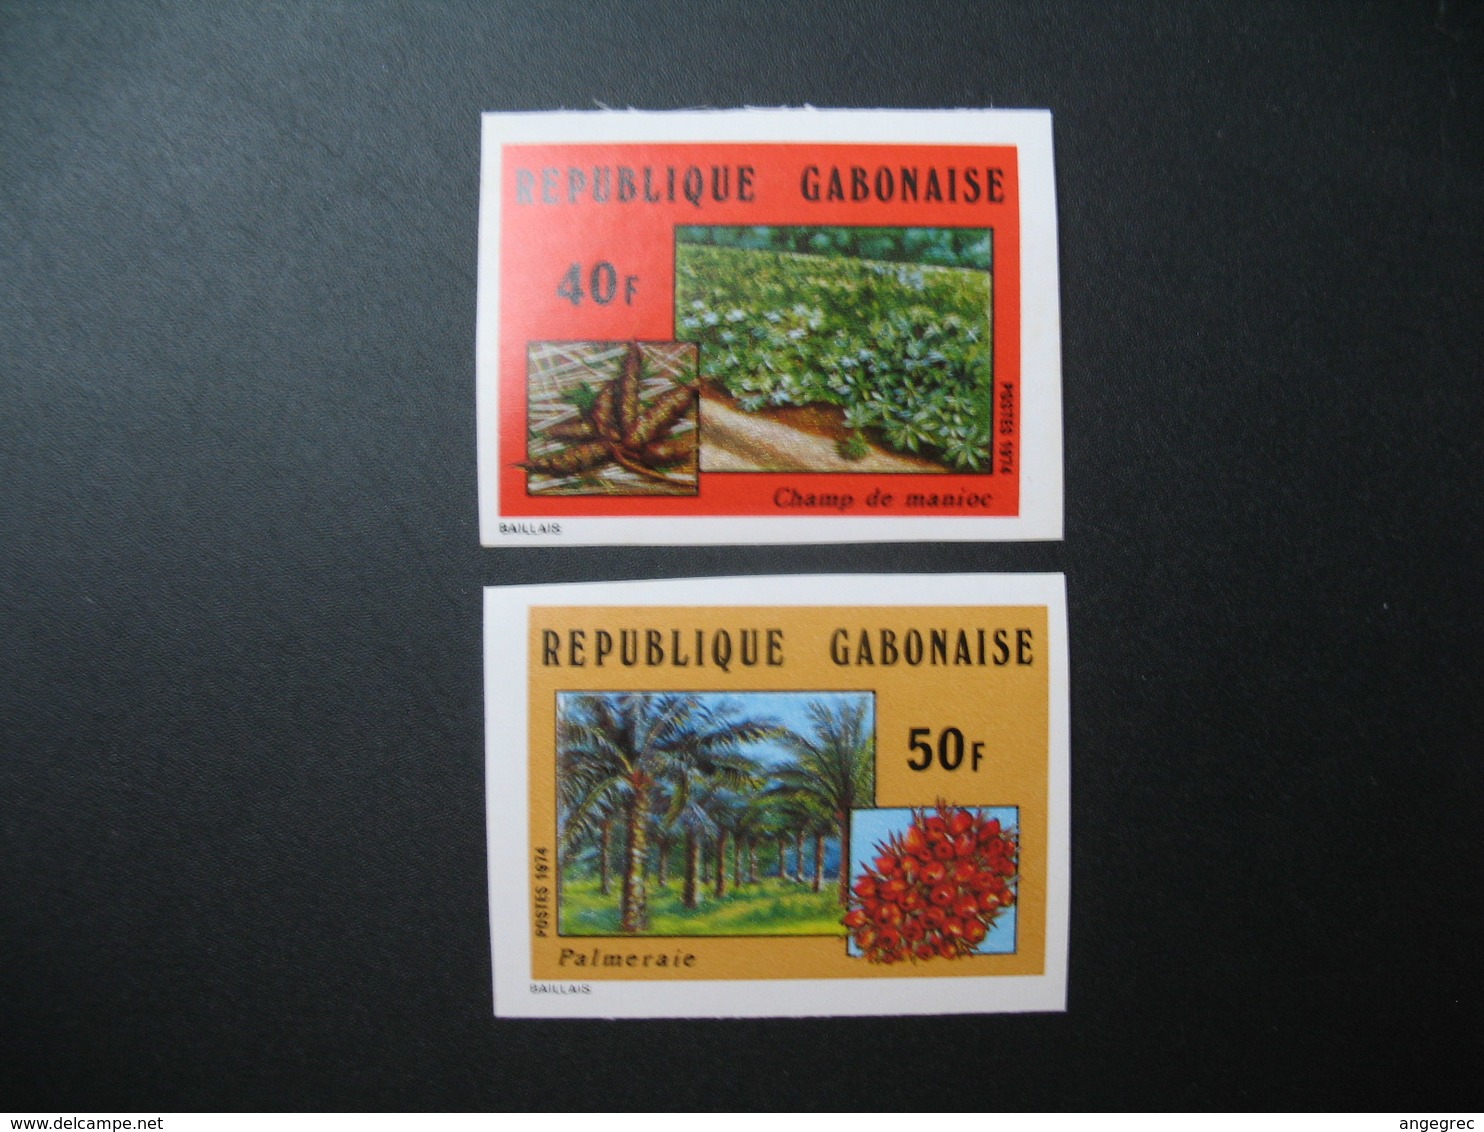 Timbre ND Non Dentelé Neuf ** MNH - Imperf   Gabon  N° 336 - 337 Agriculture Champ De Manioc Et Palmeraie - Agriculture